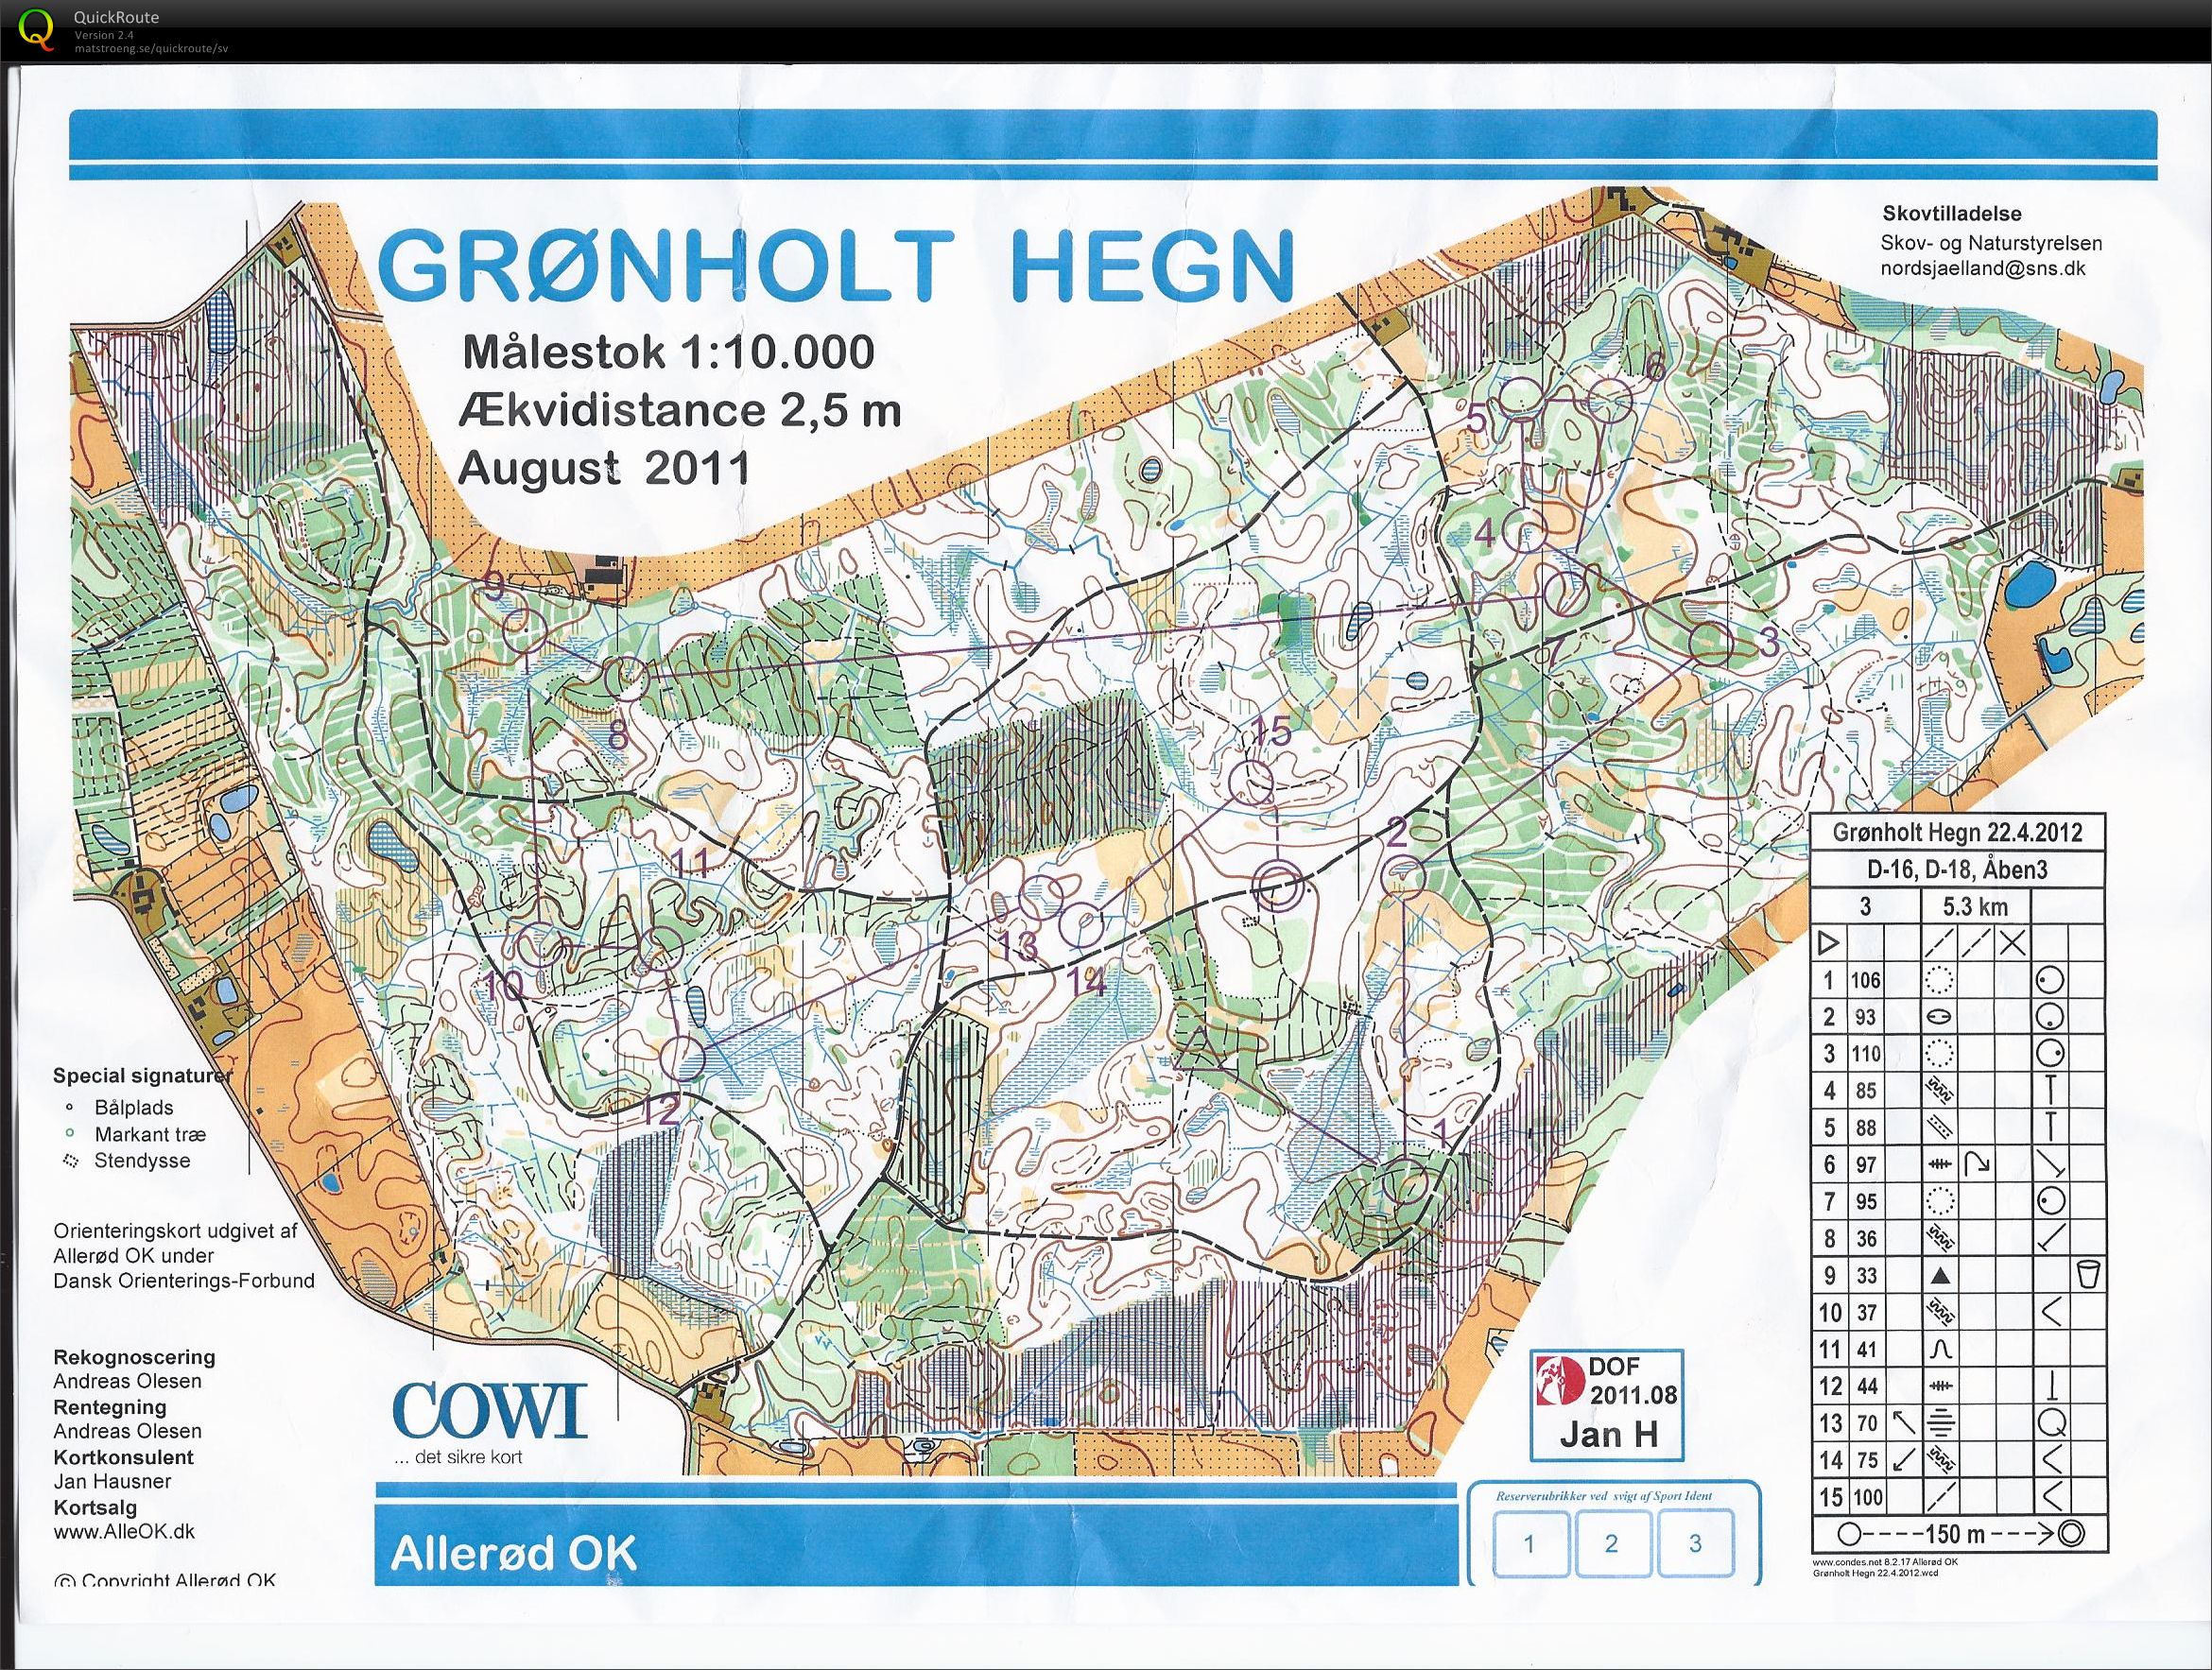 "Grønholt O-challenge" (2012-04-22)